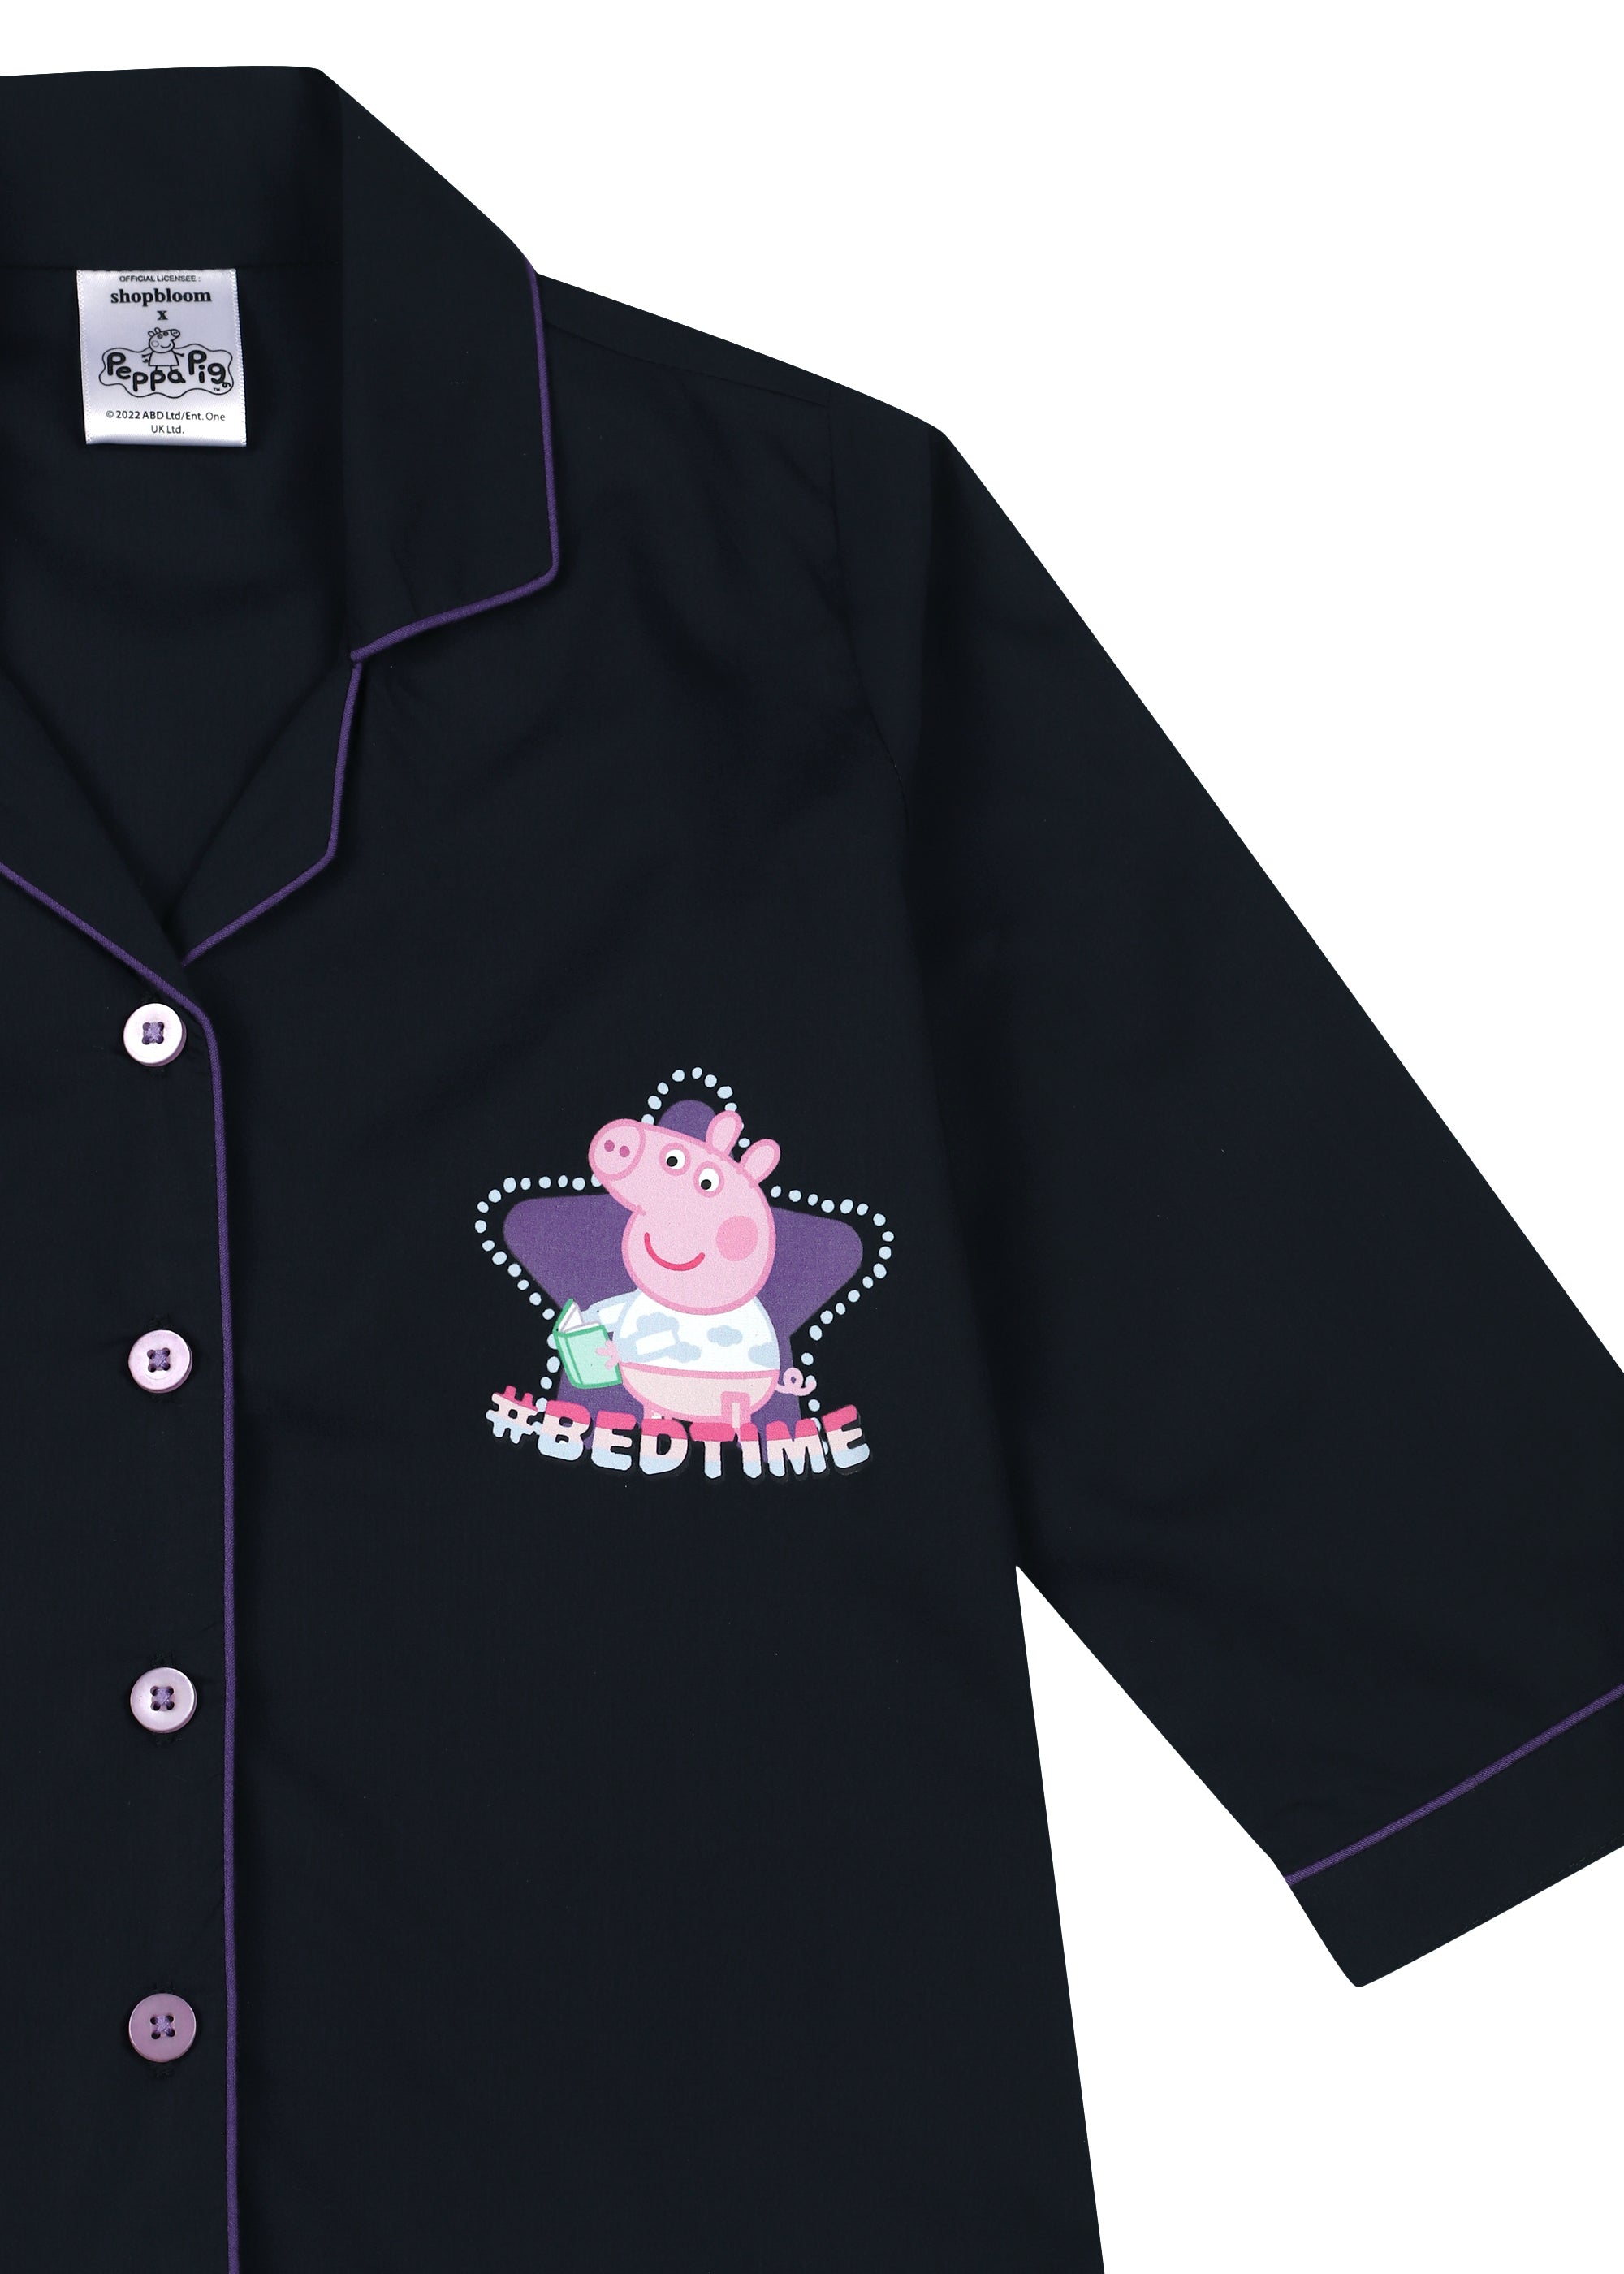 Peppa Pig Bedtime Print Long Sleeve Kids Night Suit - Shopbloom